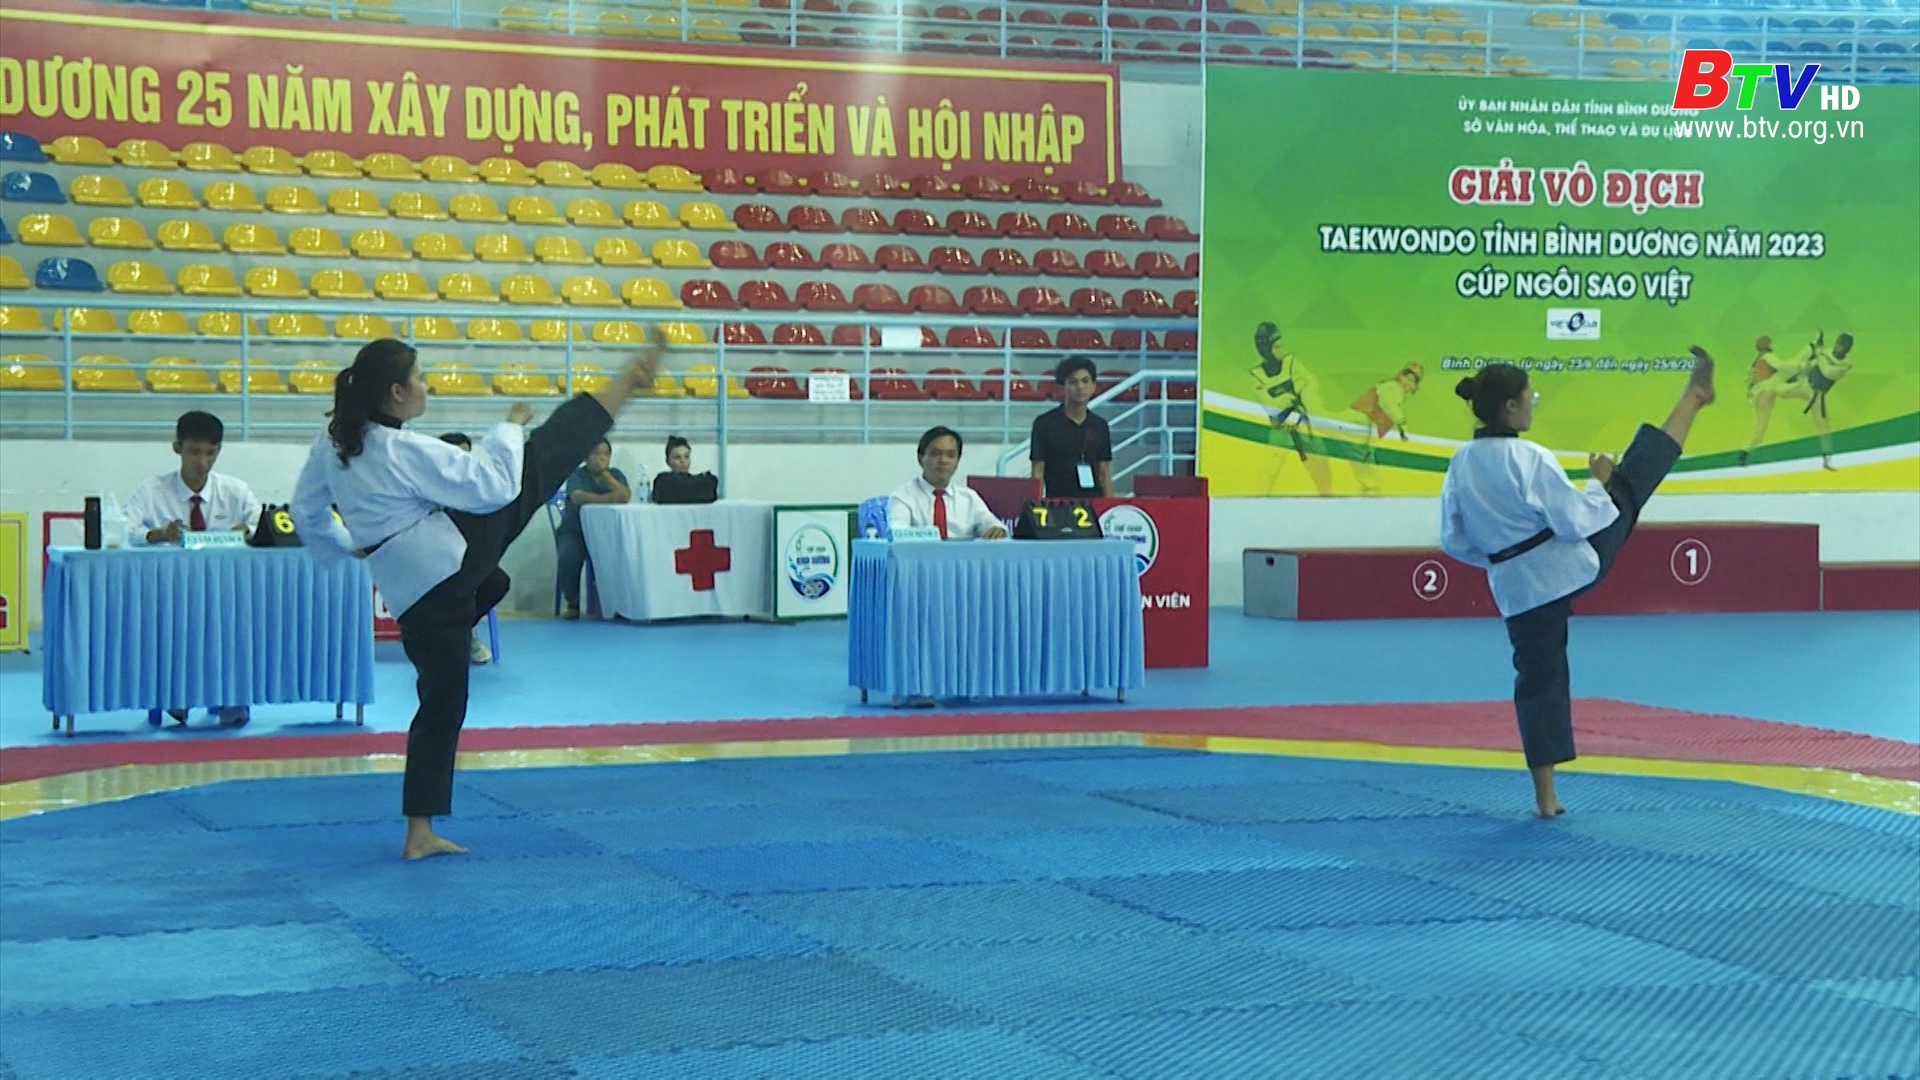 Khai mạc giải vô địch Taekwondo Bình Dương năm 2023